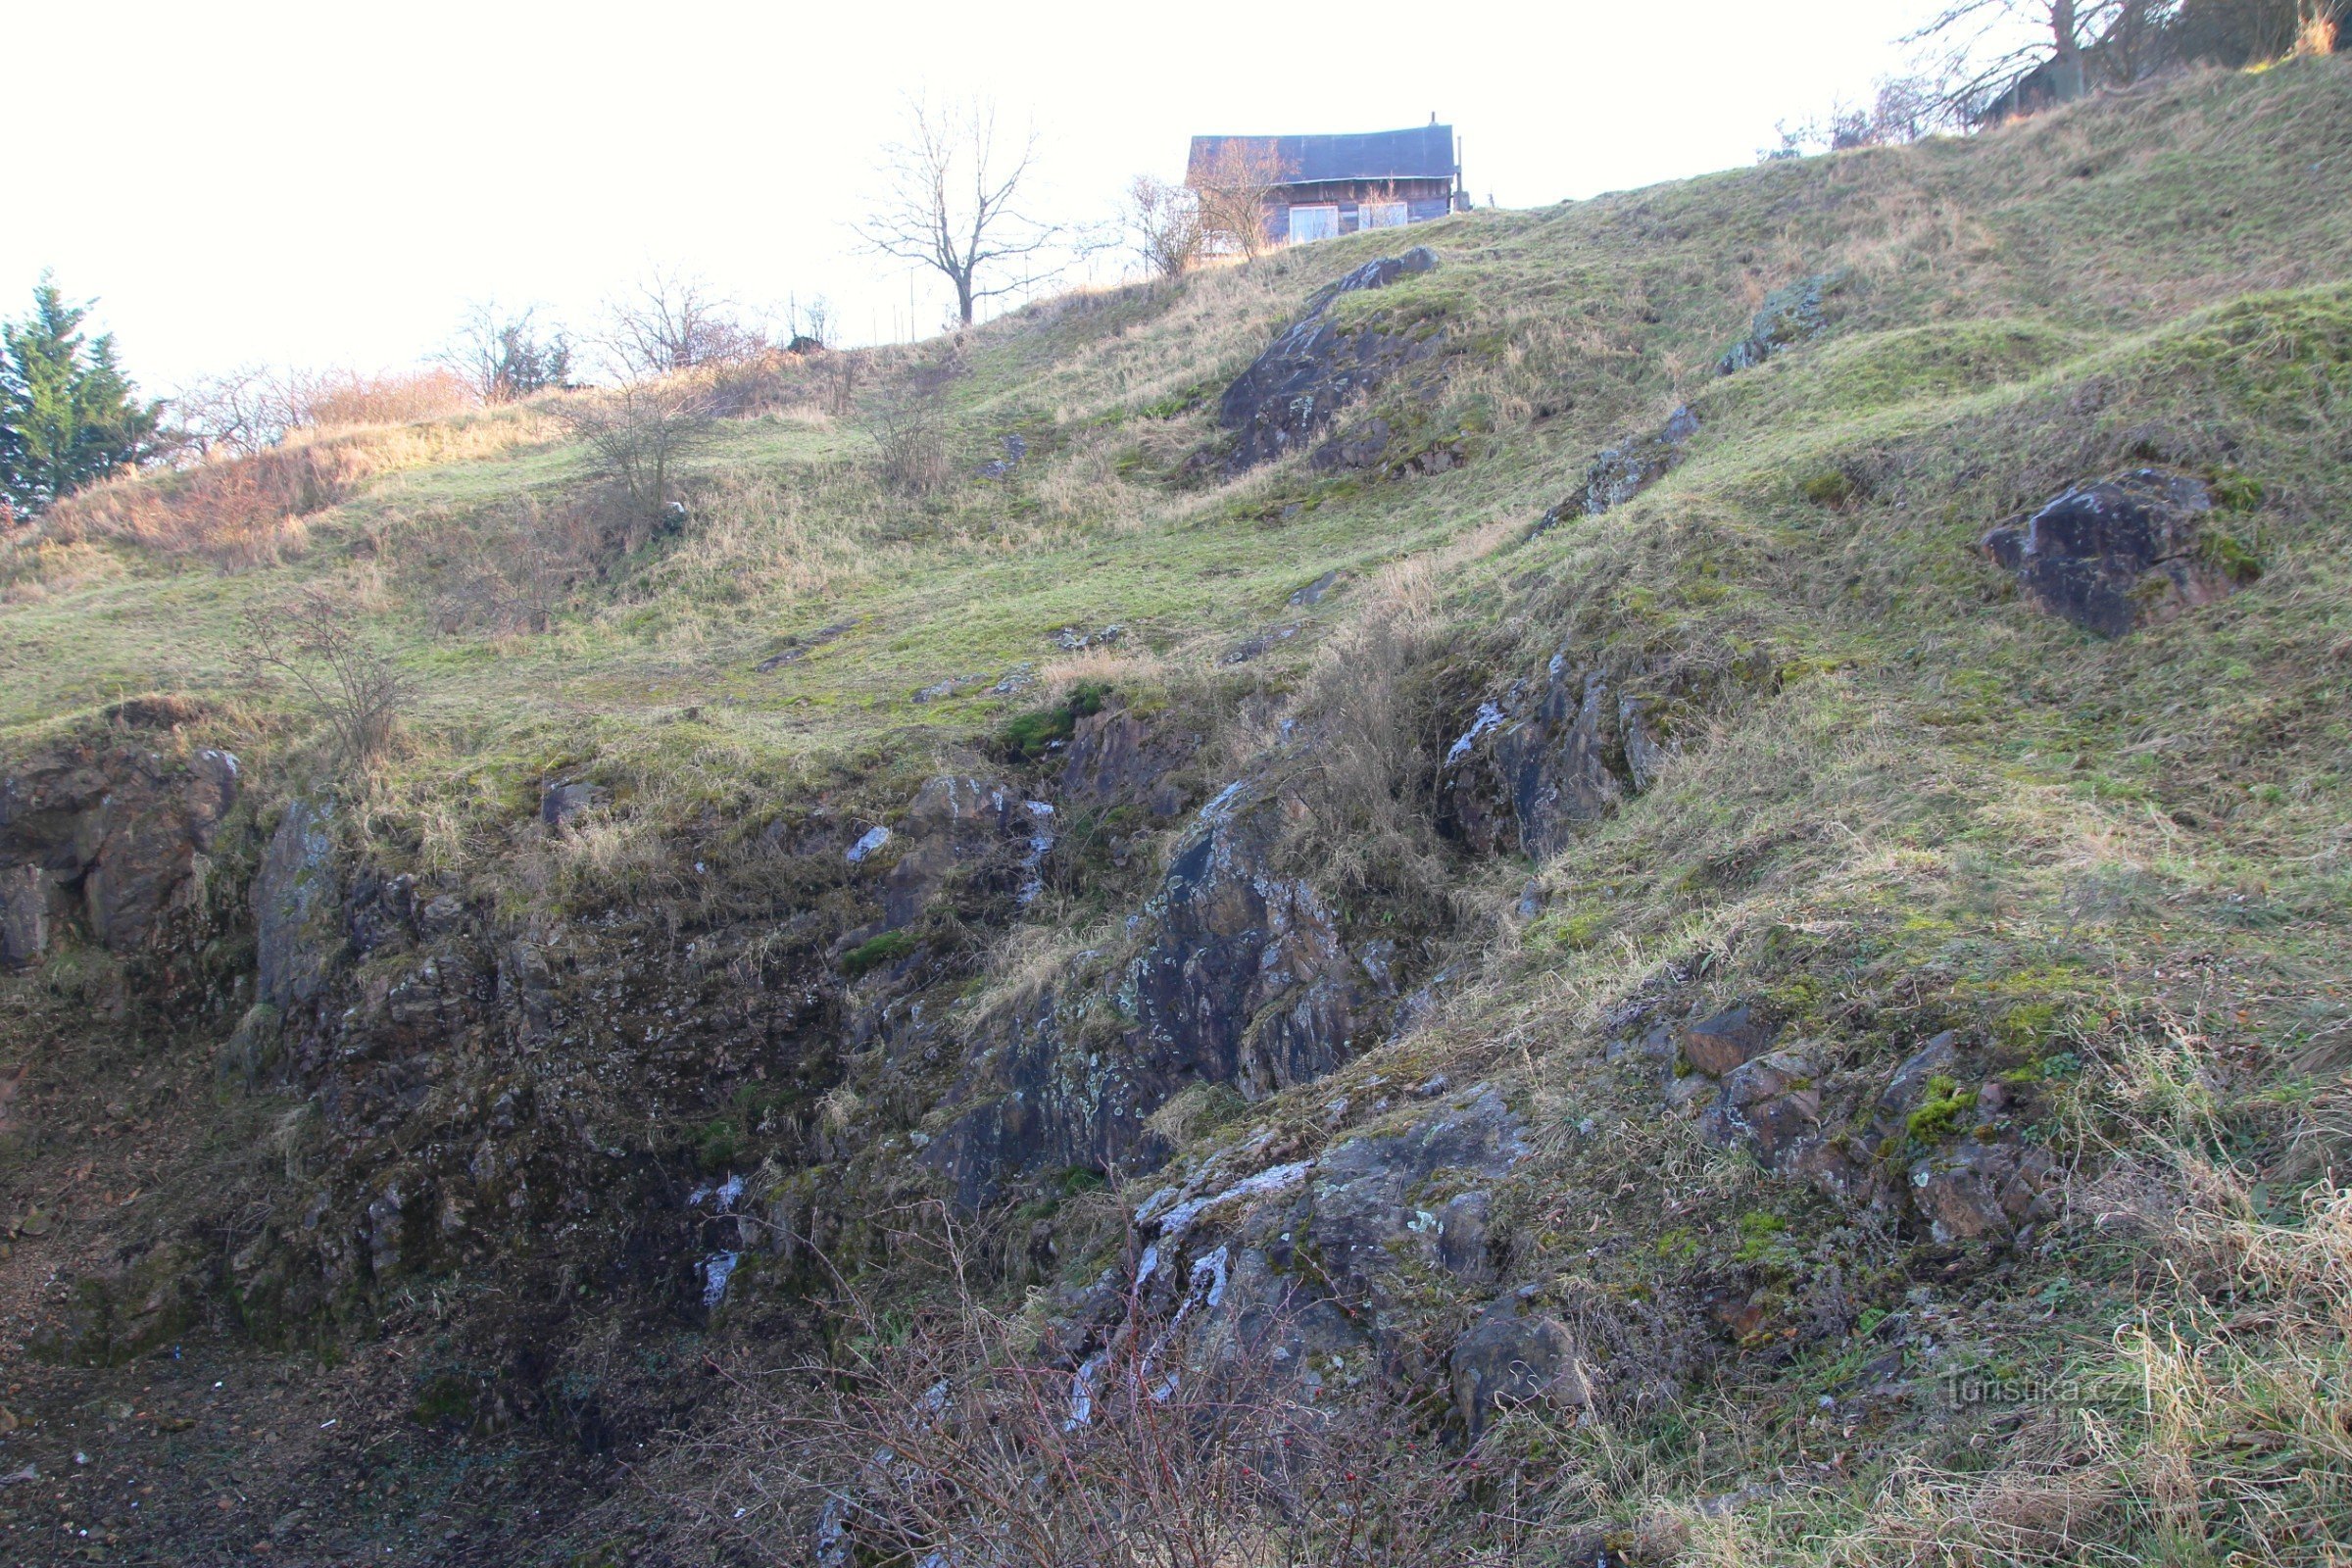 Medlánecká Rock - a natural monument